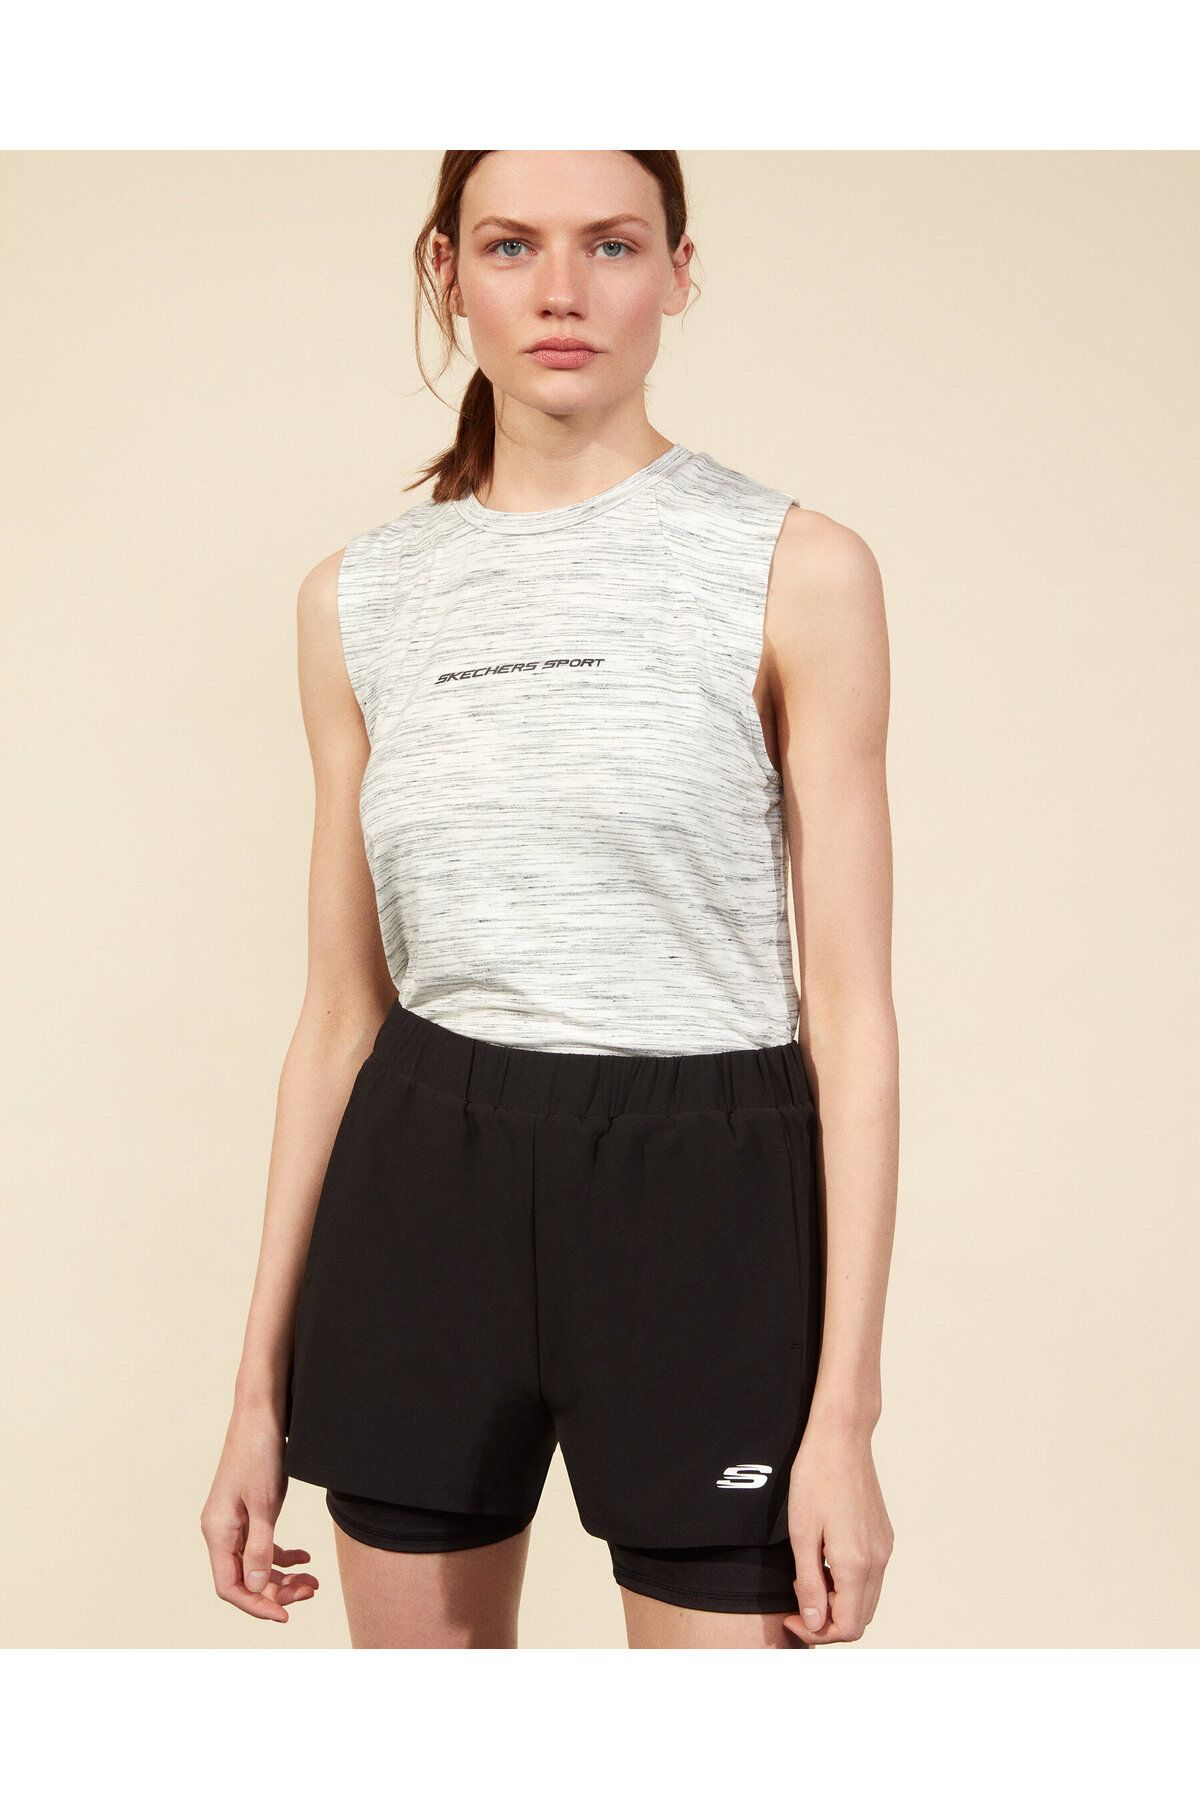 Skechers Micro Collection W Tank Top T-shirt Kadın Siyah Atlet S211235-001